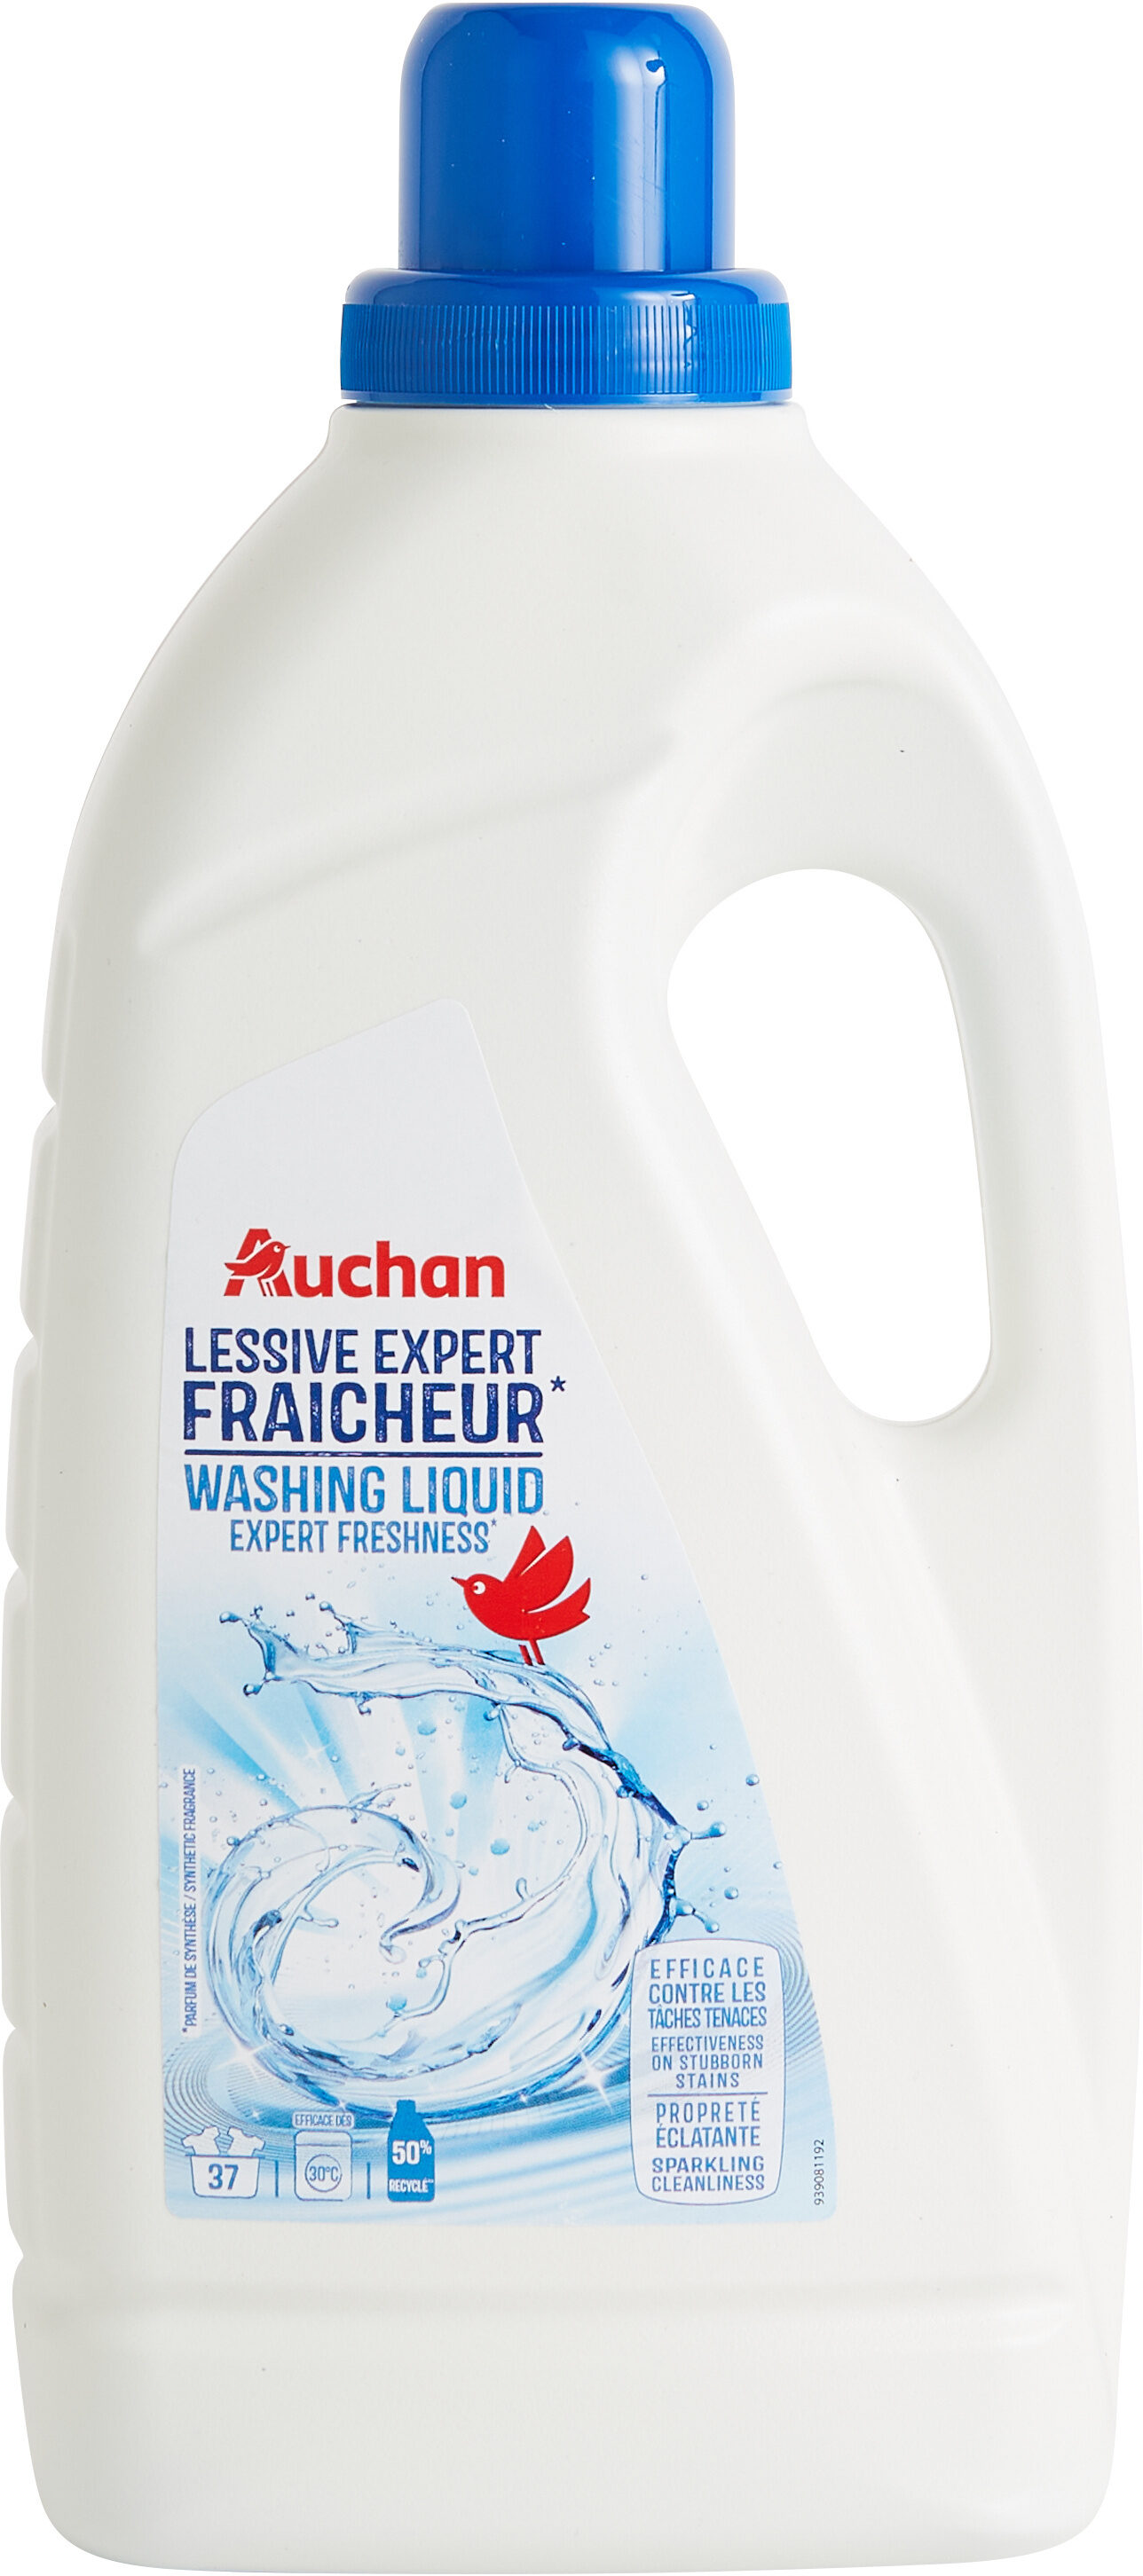 Lessive liquide Expert Fraîcheur - Product - en